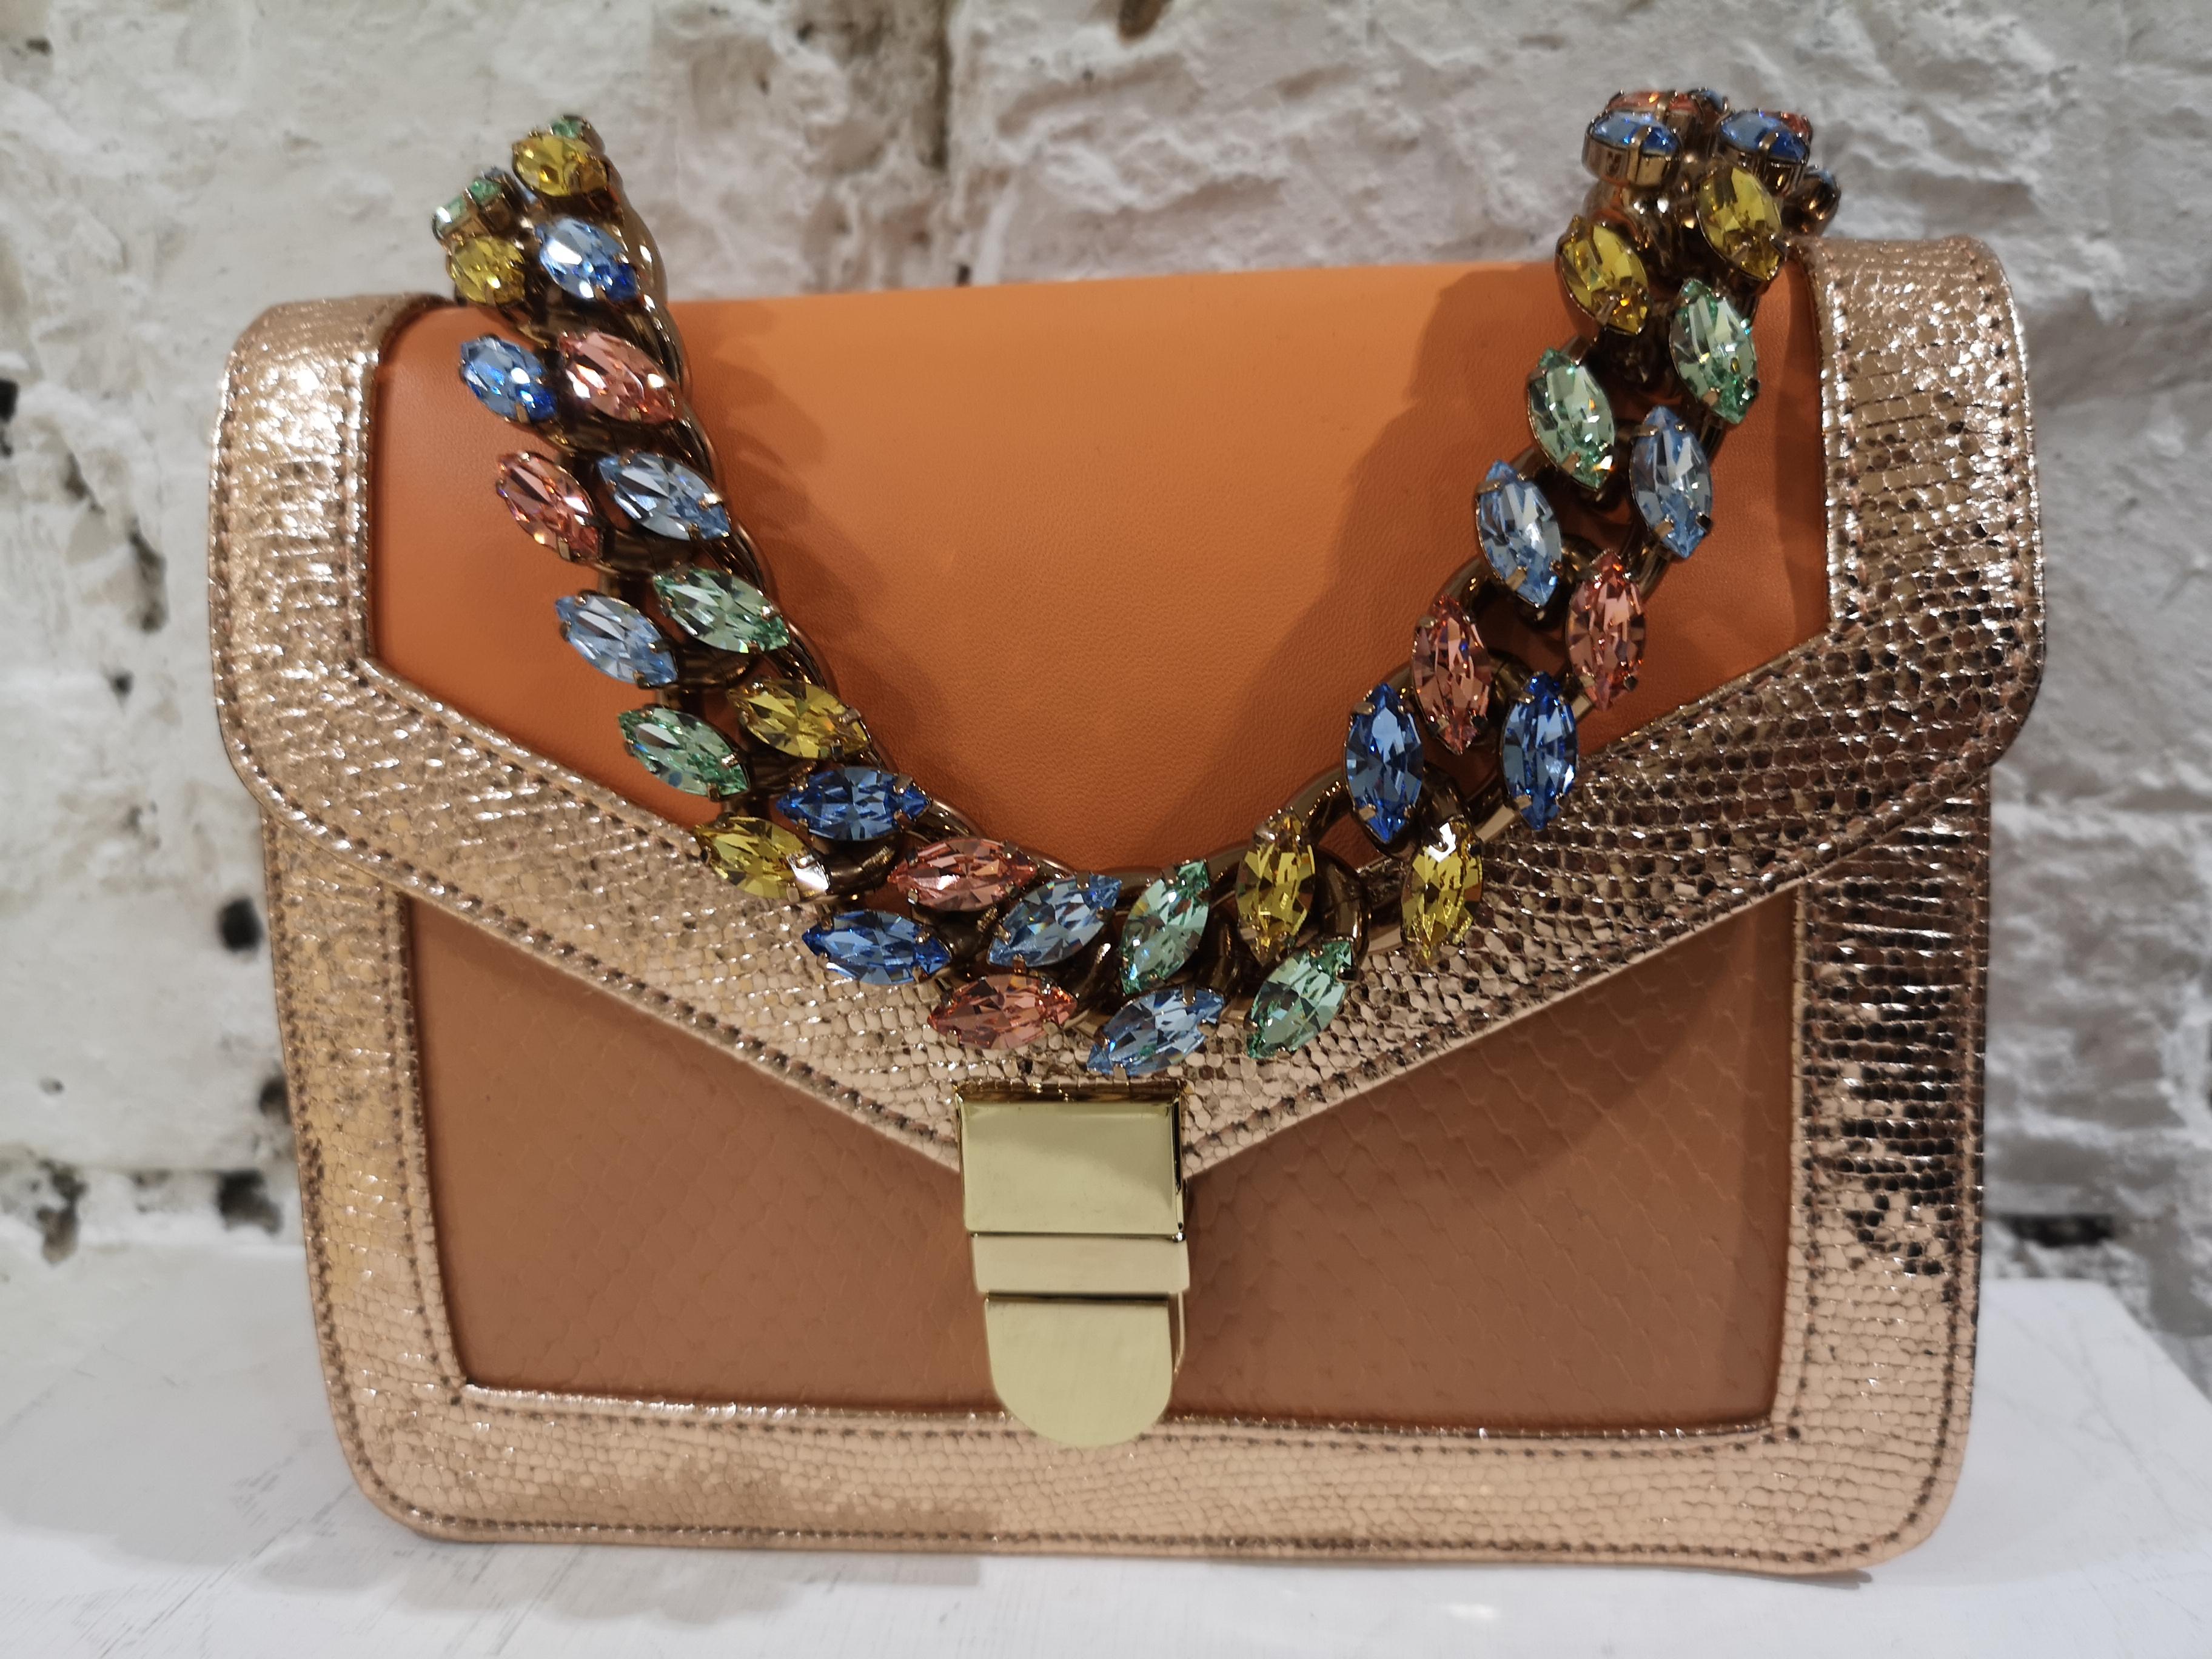 LisaC orange textile and leather shoulder handbag
embellished with swarovsky handle